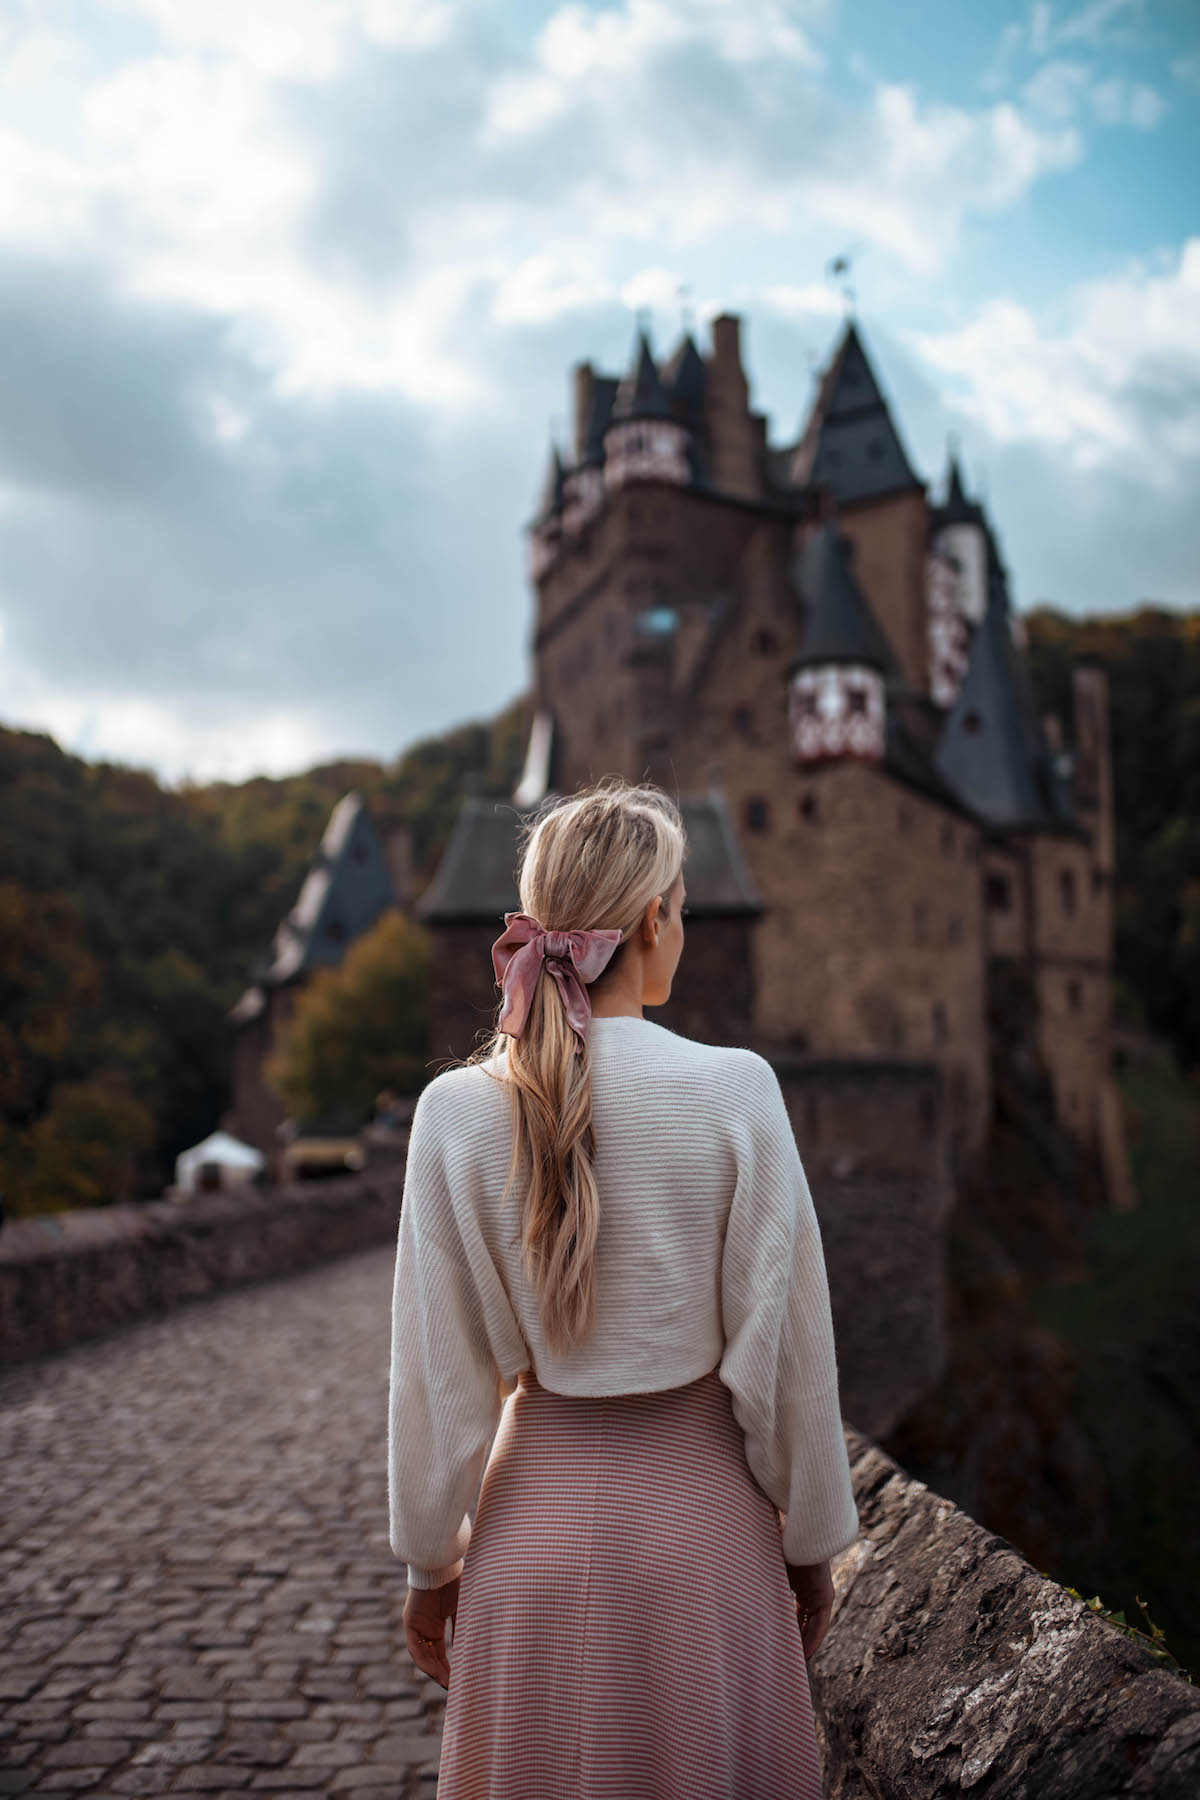 Eltz Castle Germany